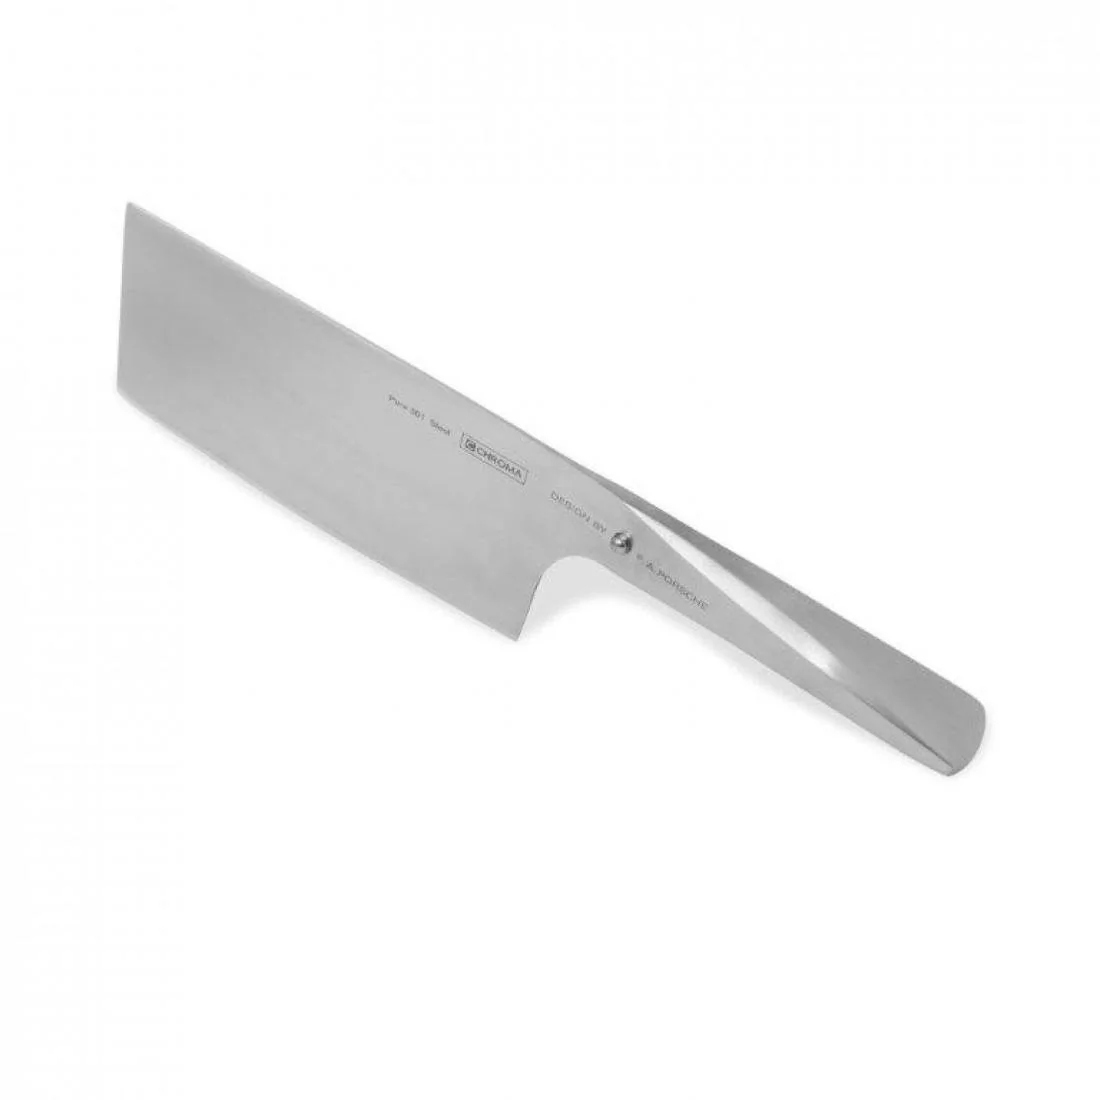 Chroma Chiński nóż do siekania tasak Type 301, 17 cm